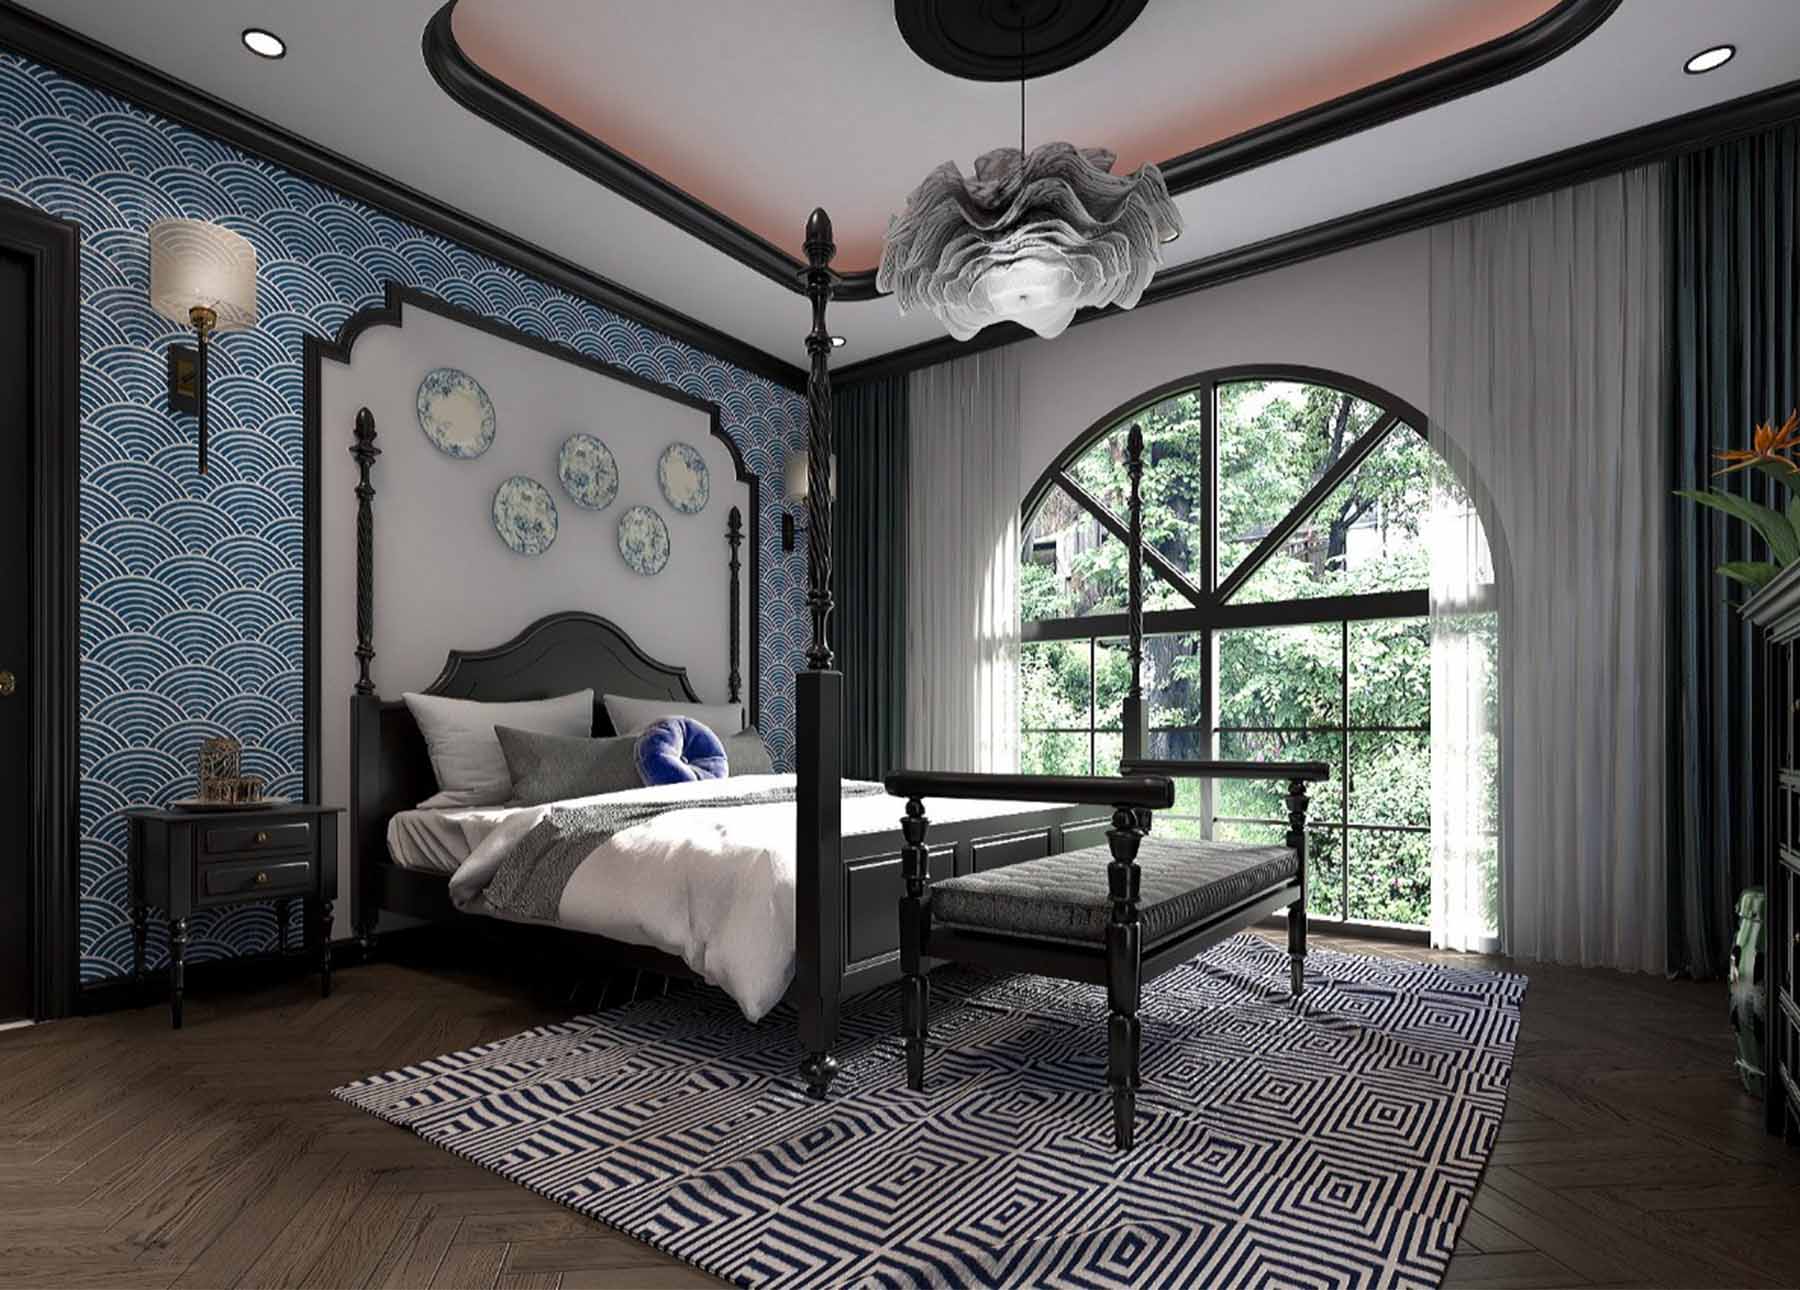 Nét mộc mạc của giường ngủ phong cách Indochine mang lại cảm giác gần gũi